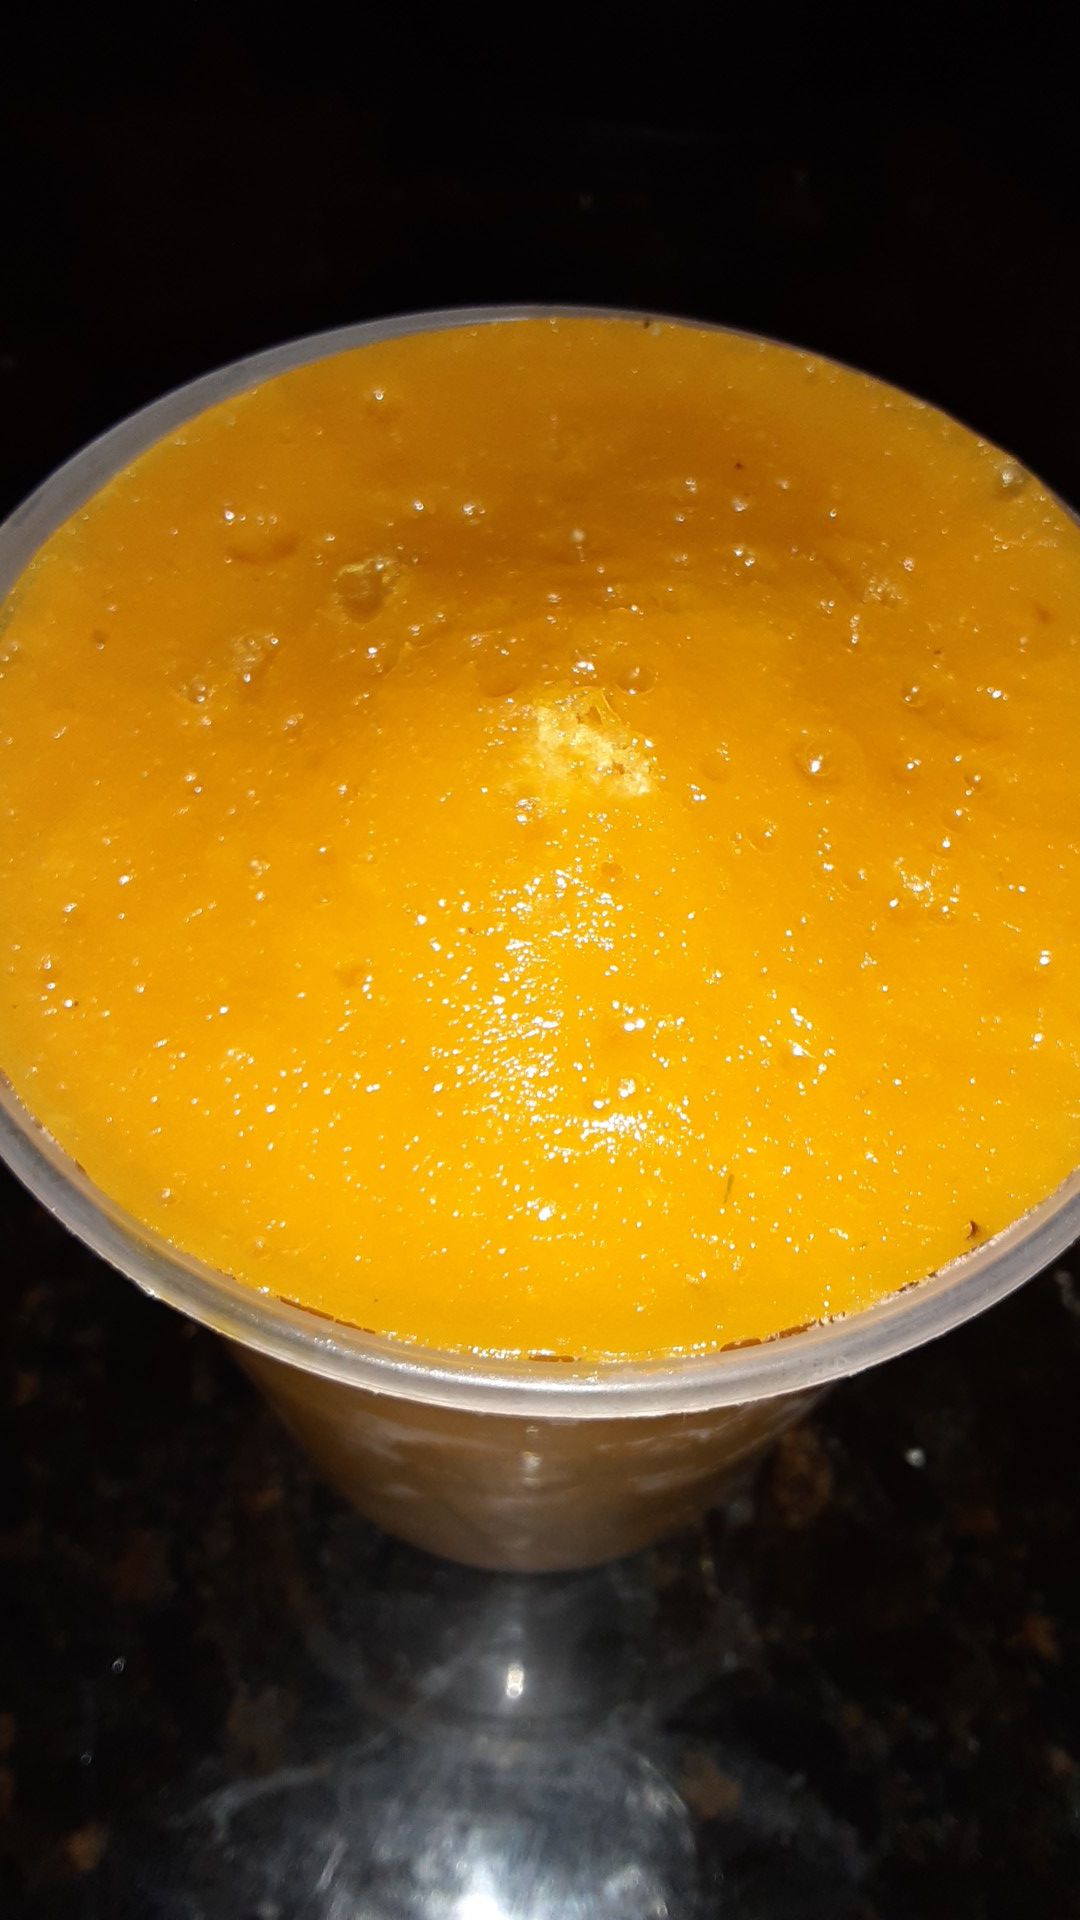 Frozen mangoe puree